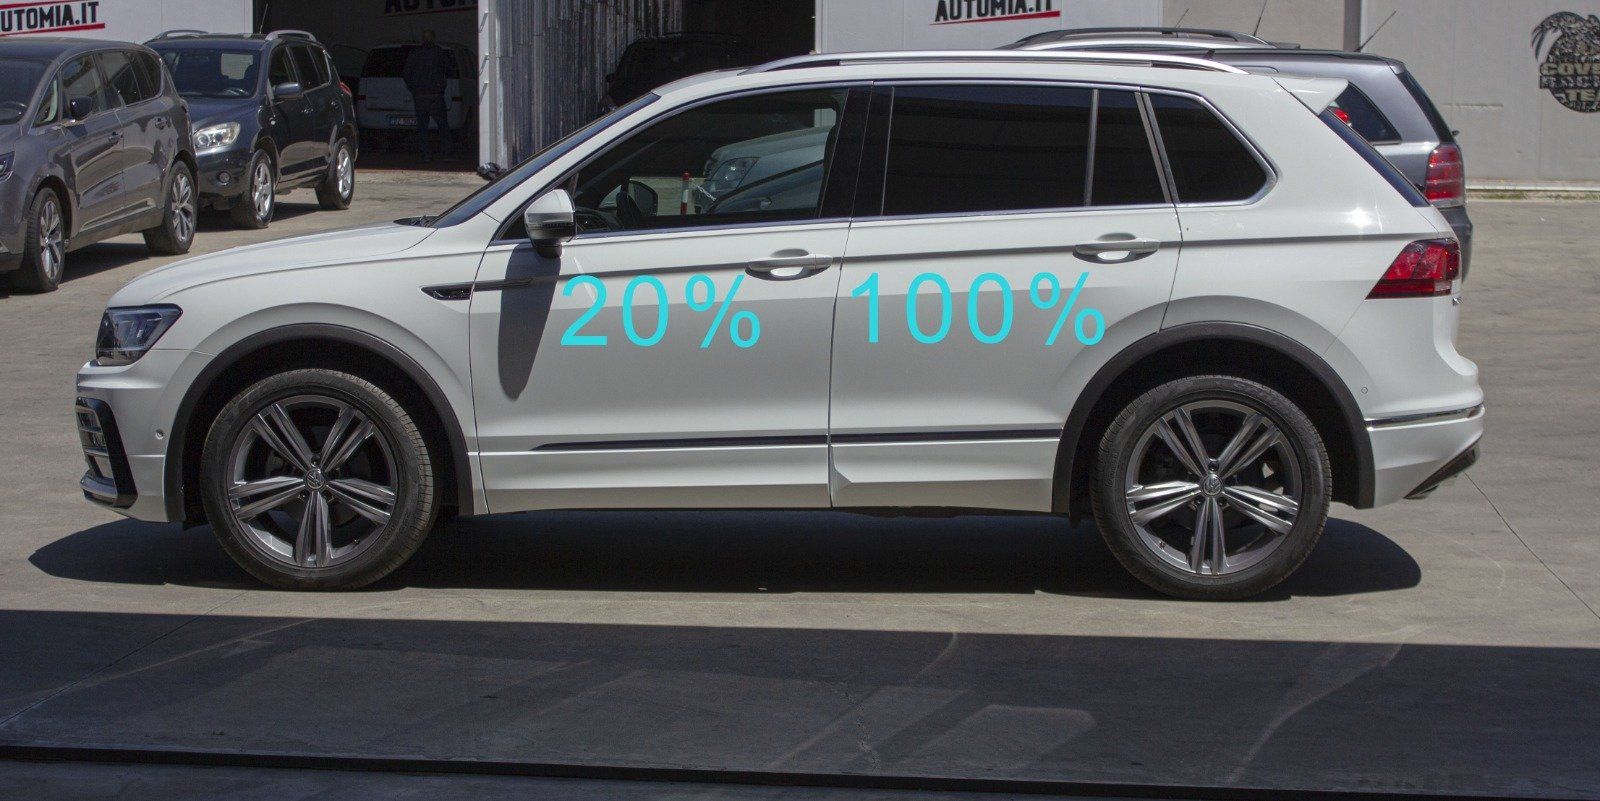 Gradazione  tonalità oscuramento vetri auto con pellicole oscuranti al 100% scuro  VW Tiguan 2020